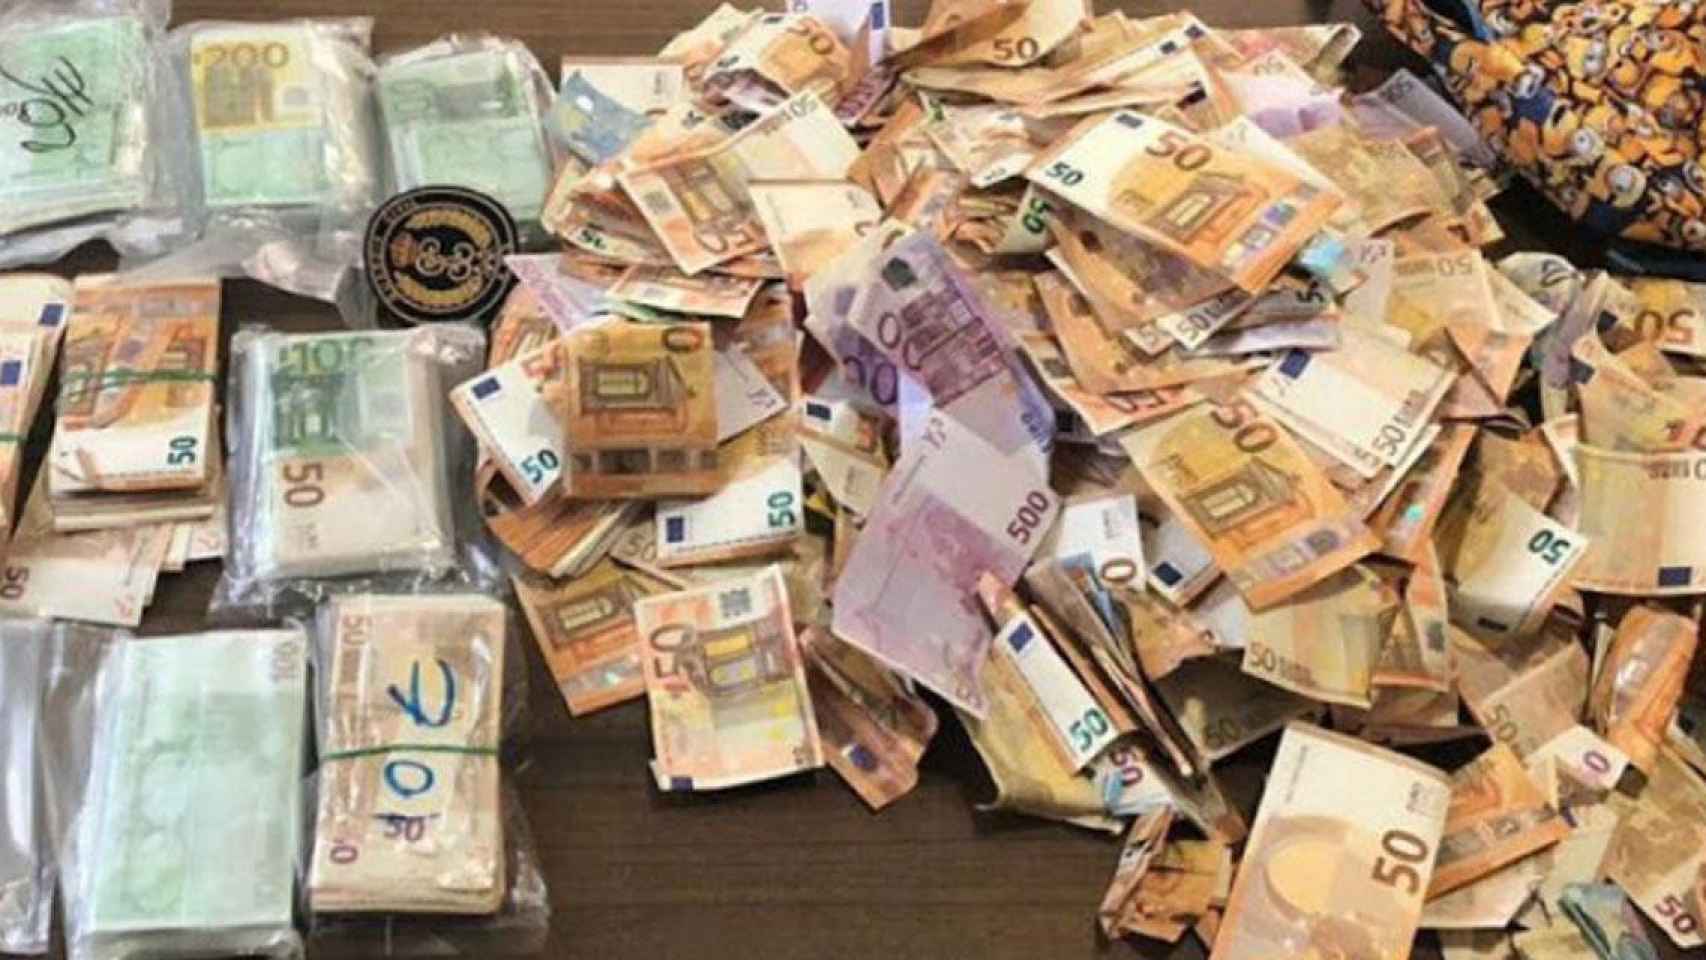 Dinero incautado por la Guardia Civil a un conductor en otra operación / GUARDIA CIVIL